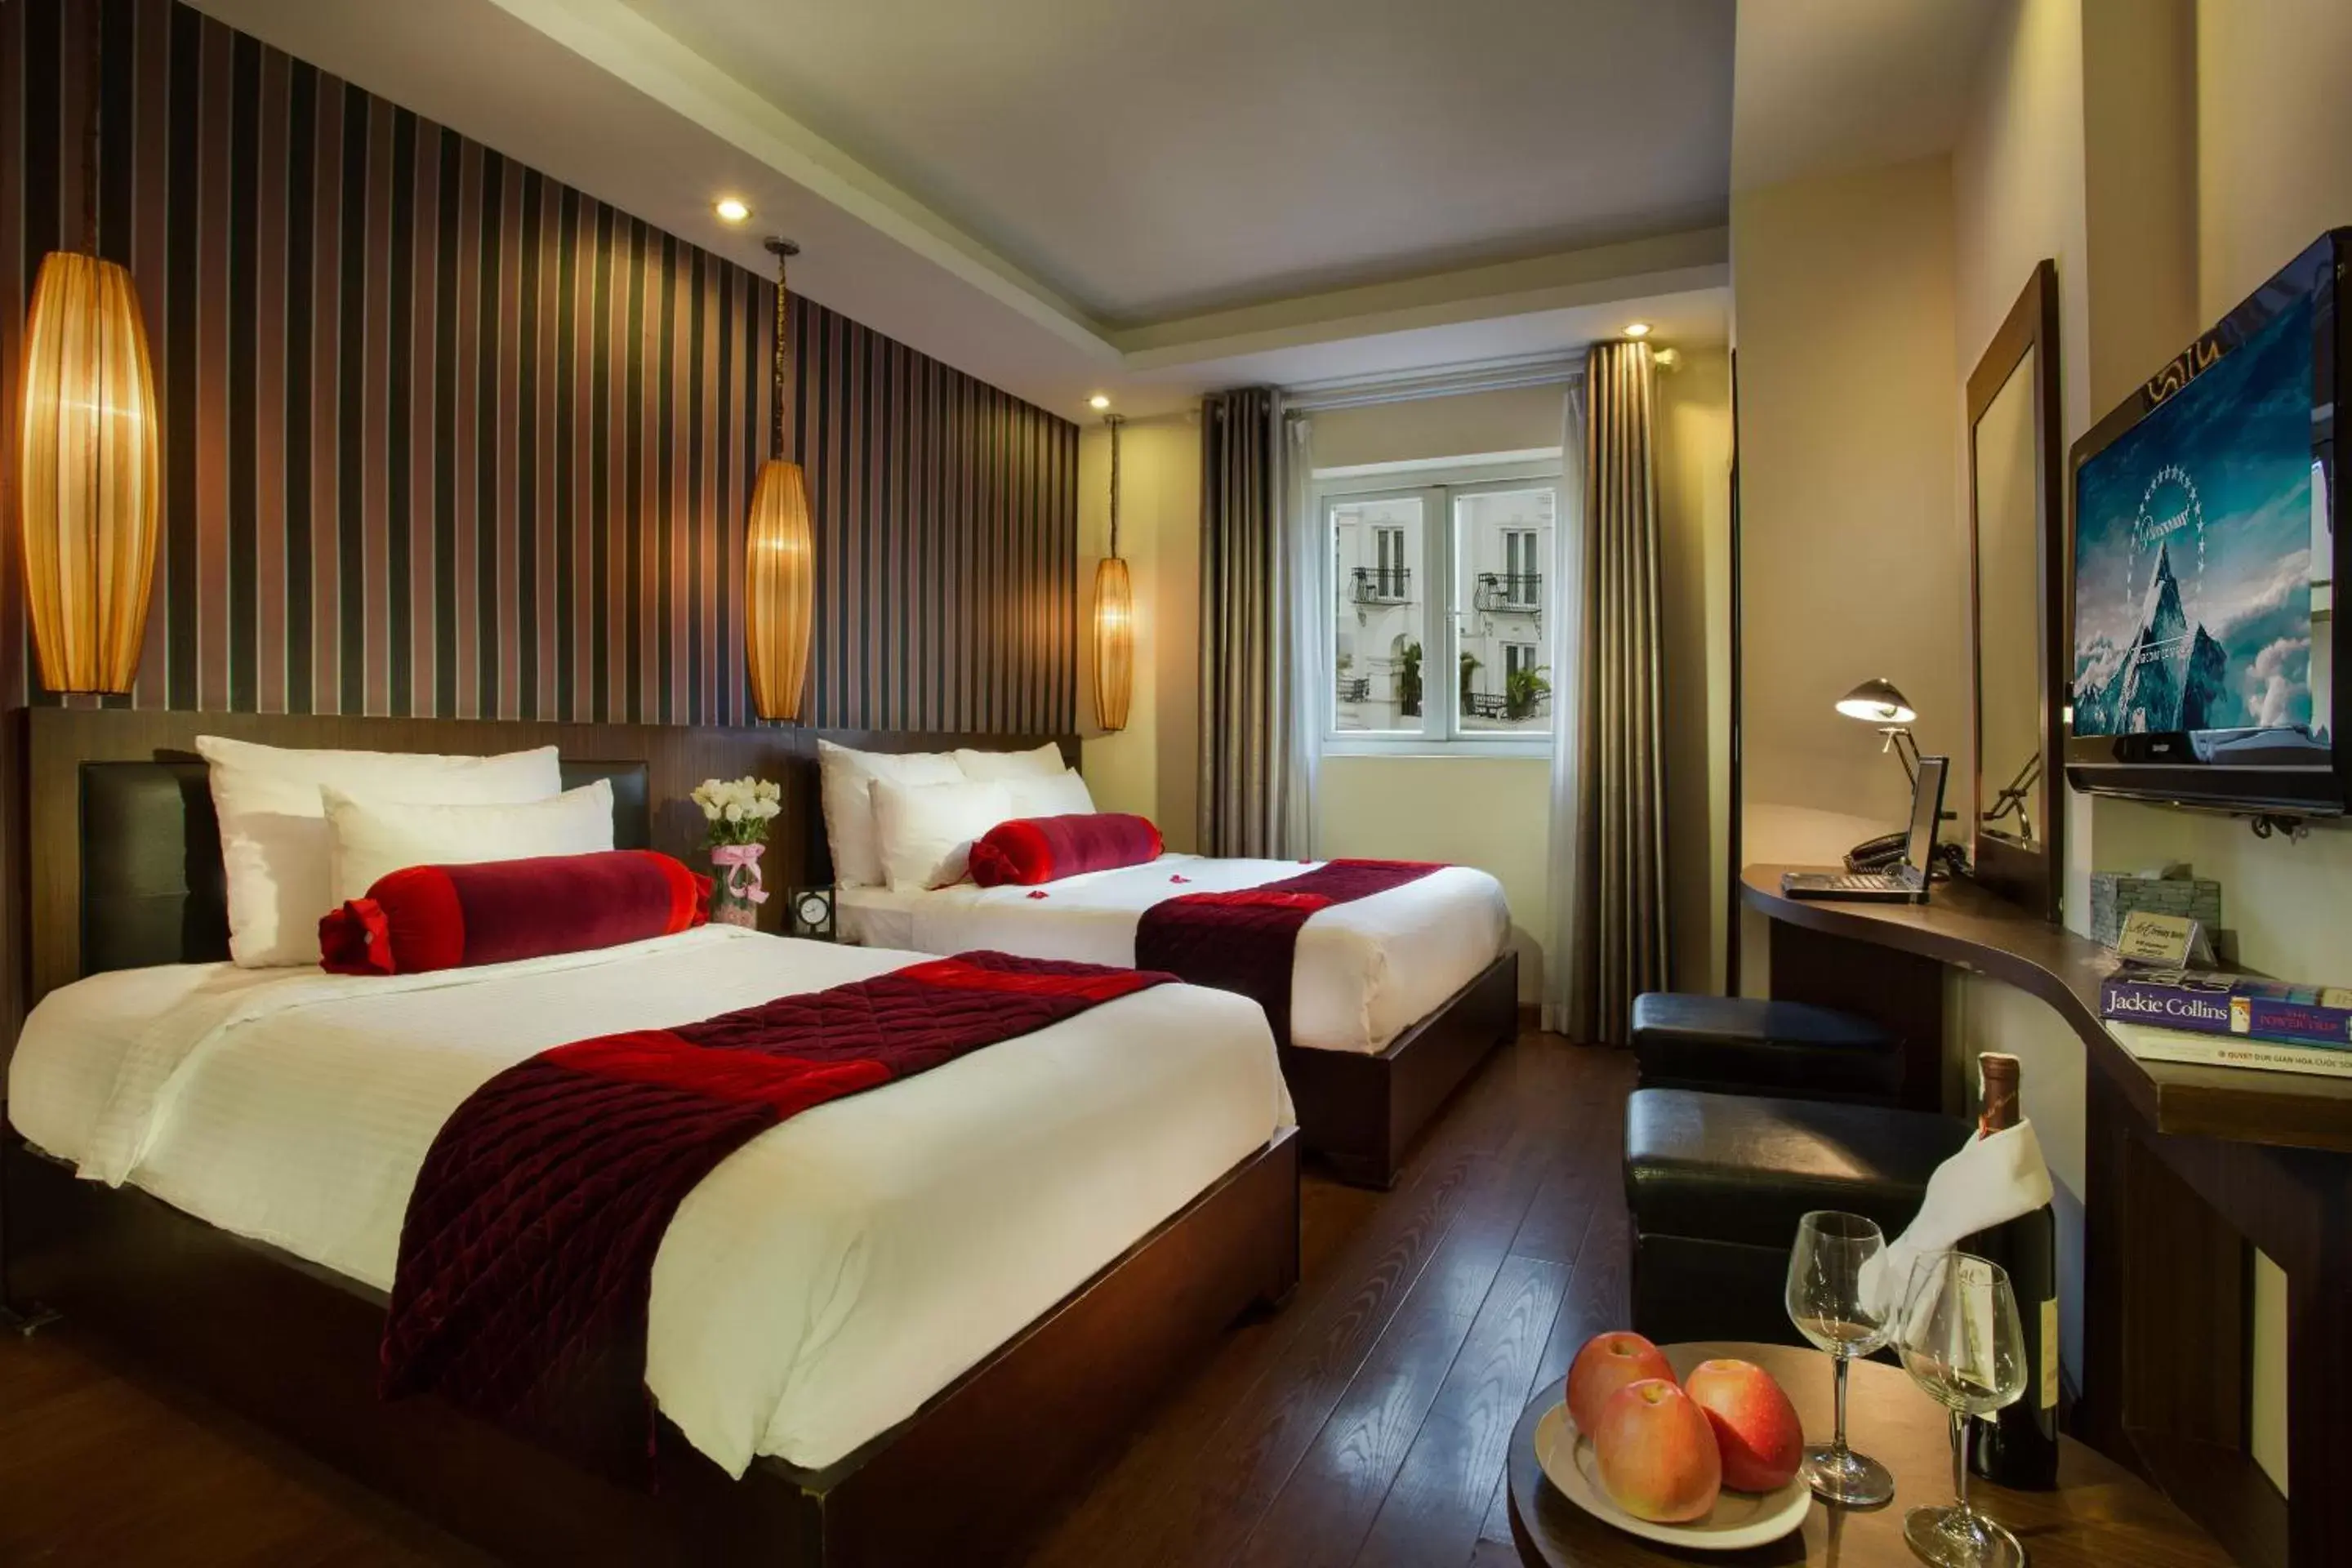 Bedroom, Bed in Golden Art Hotel